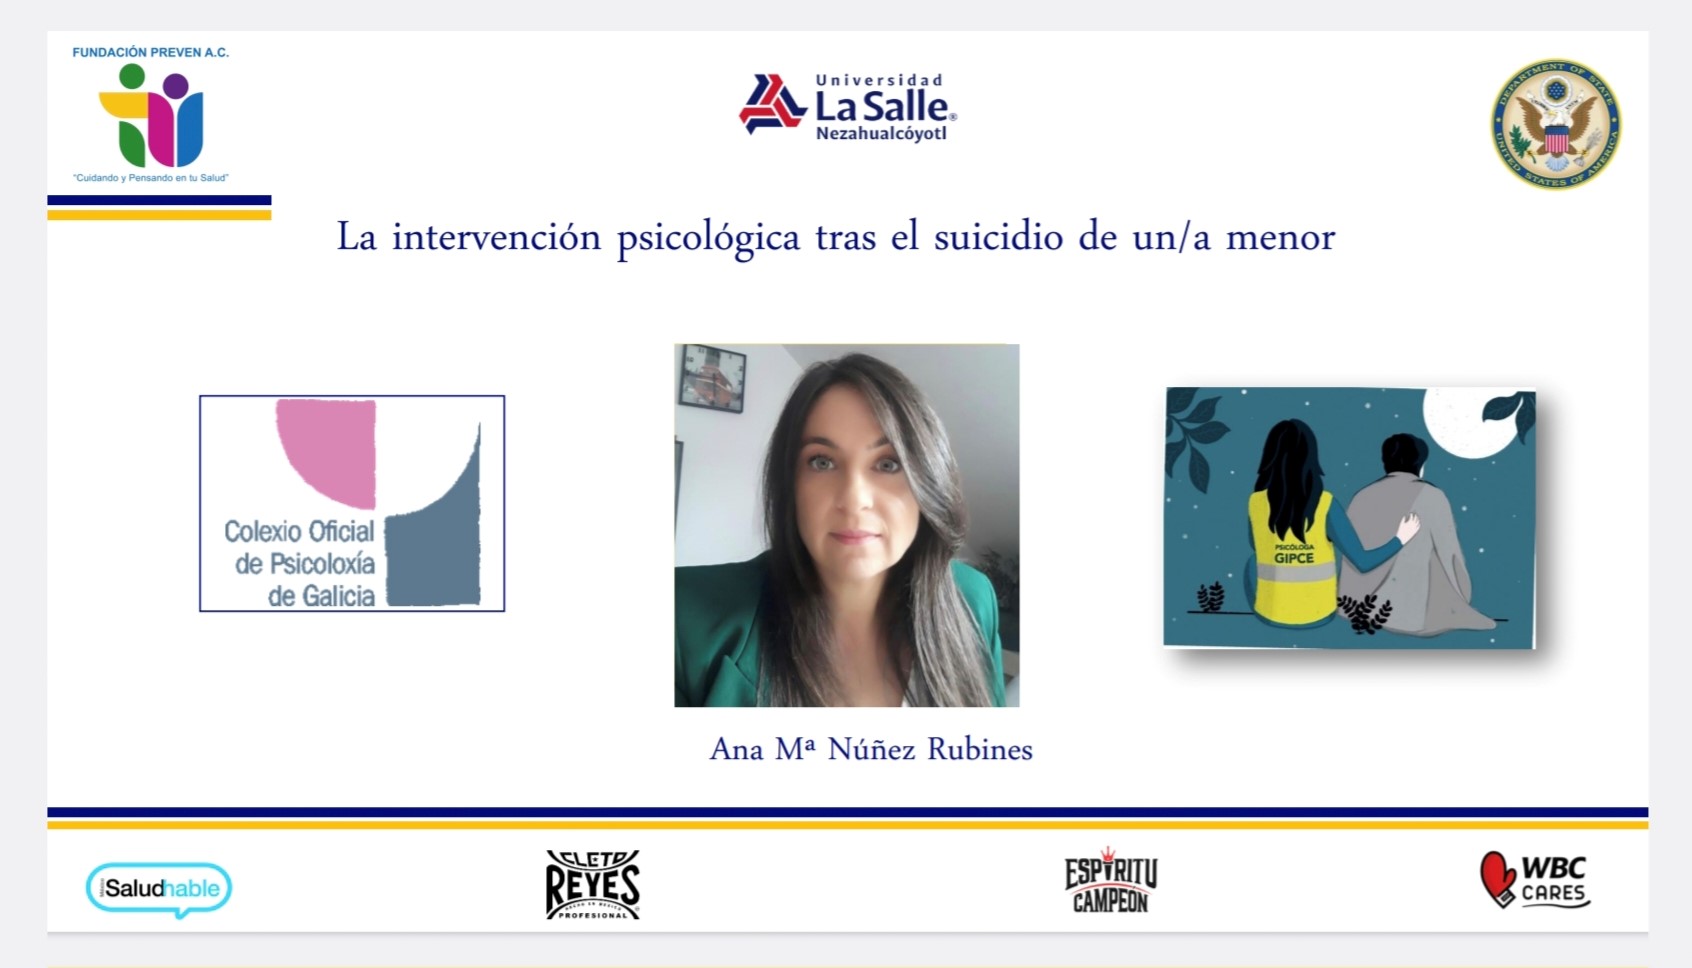 Presentación do GIPCE no 3ª Congreso Internacional e 4ª Simposio Nacional sobre prevención do suicidio e promoción da saúde mental en nenas, nenos, adolescentes e grupos vulnerables